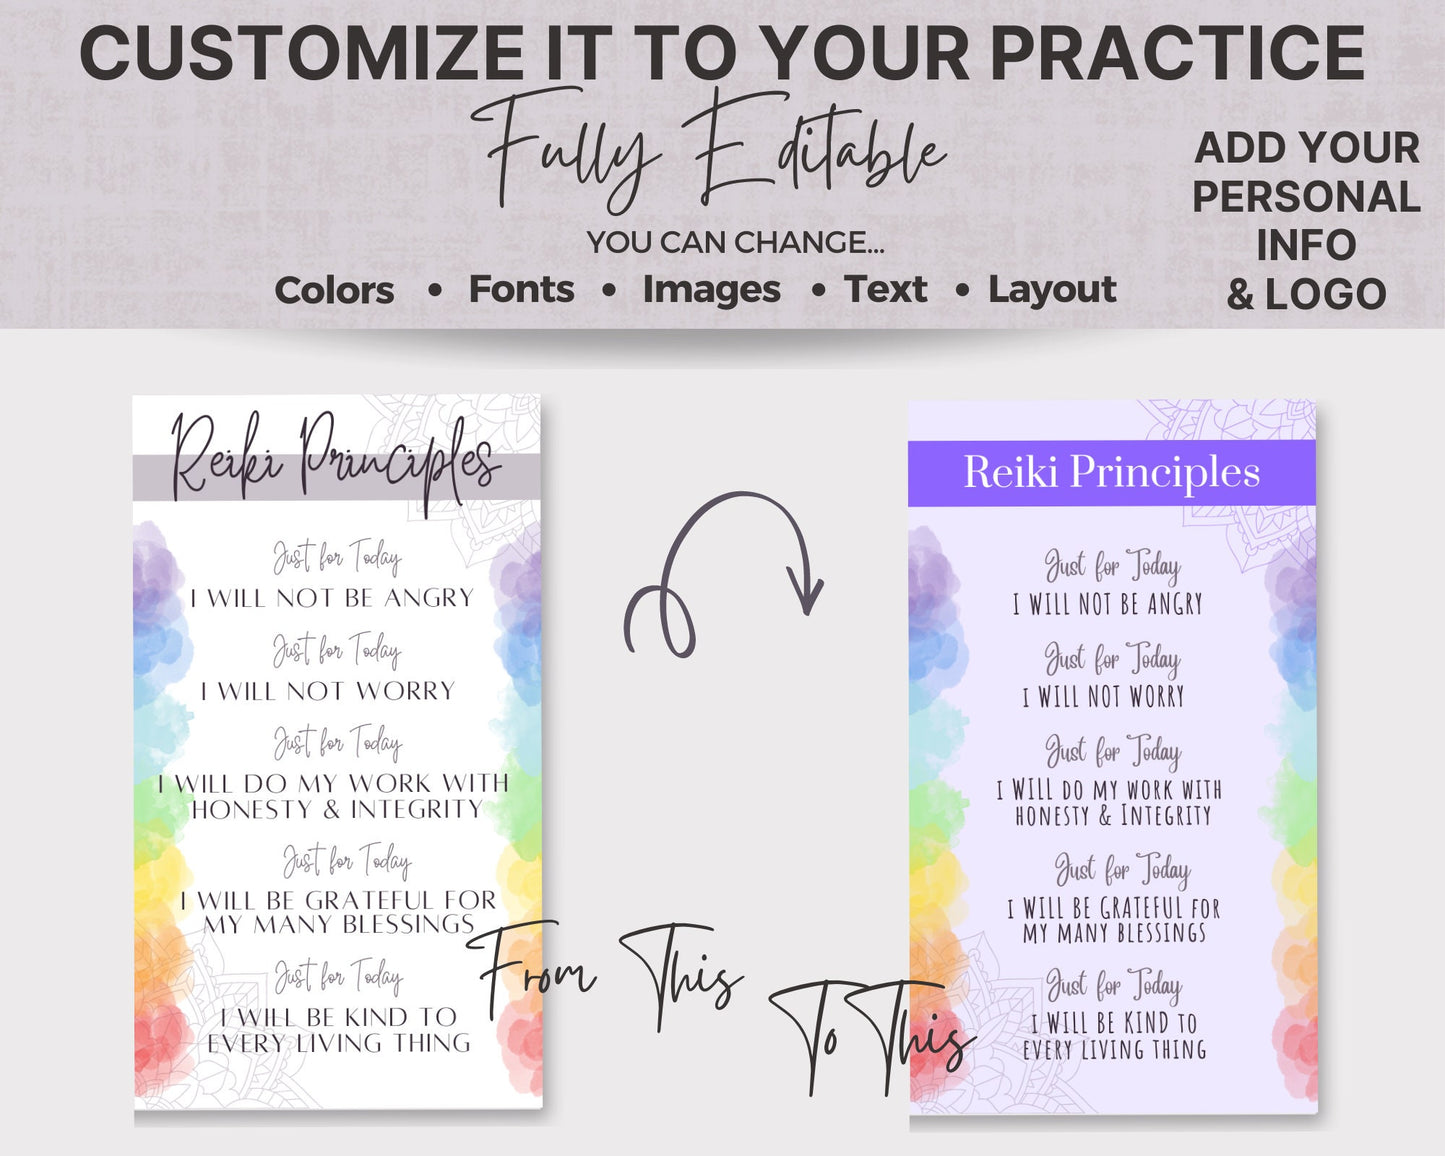 Reiki Principles Card & Reiki Aftercare Card, Just for Today Reiki Prayer, Reiki Healing Vibes, Energy Healing Reiki Card, Reiki Master Gift